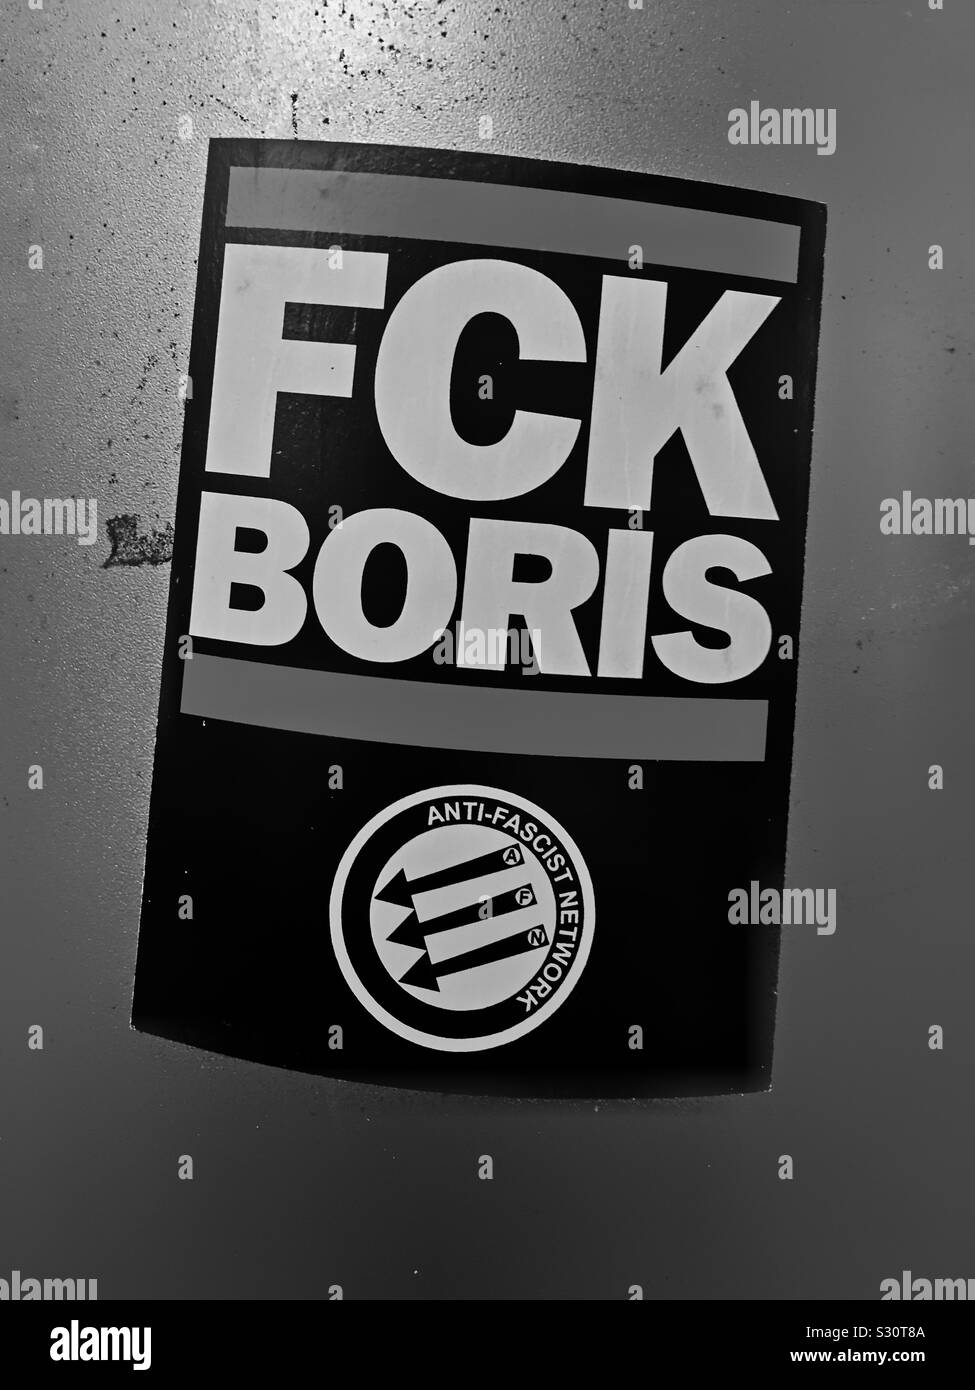 Un autocollant se référant au premier ministre Boris Johnson avec le slogan "FCK BORIS" vu pendant la campagne générale Au Royaume-Uni 2019 Banque D'Images